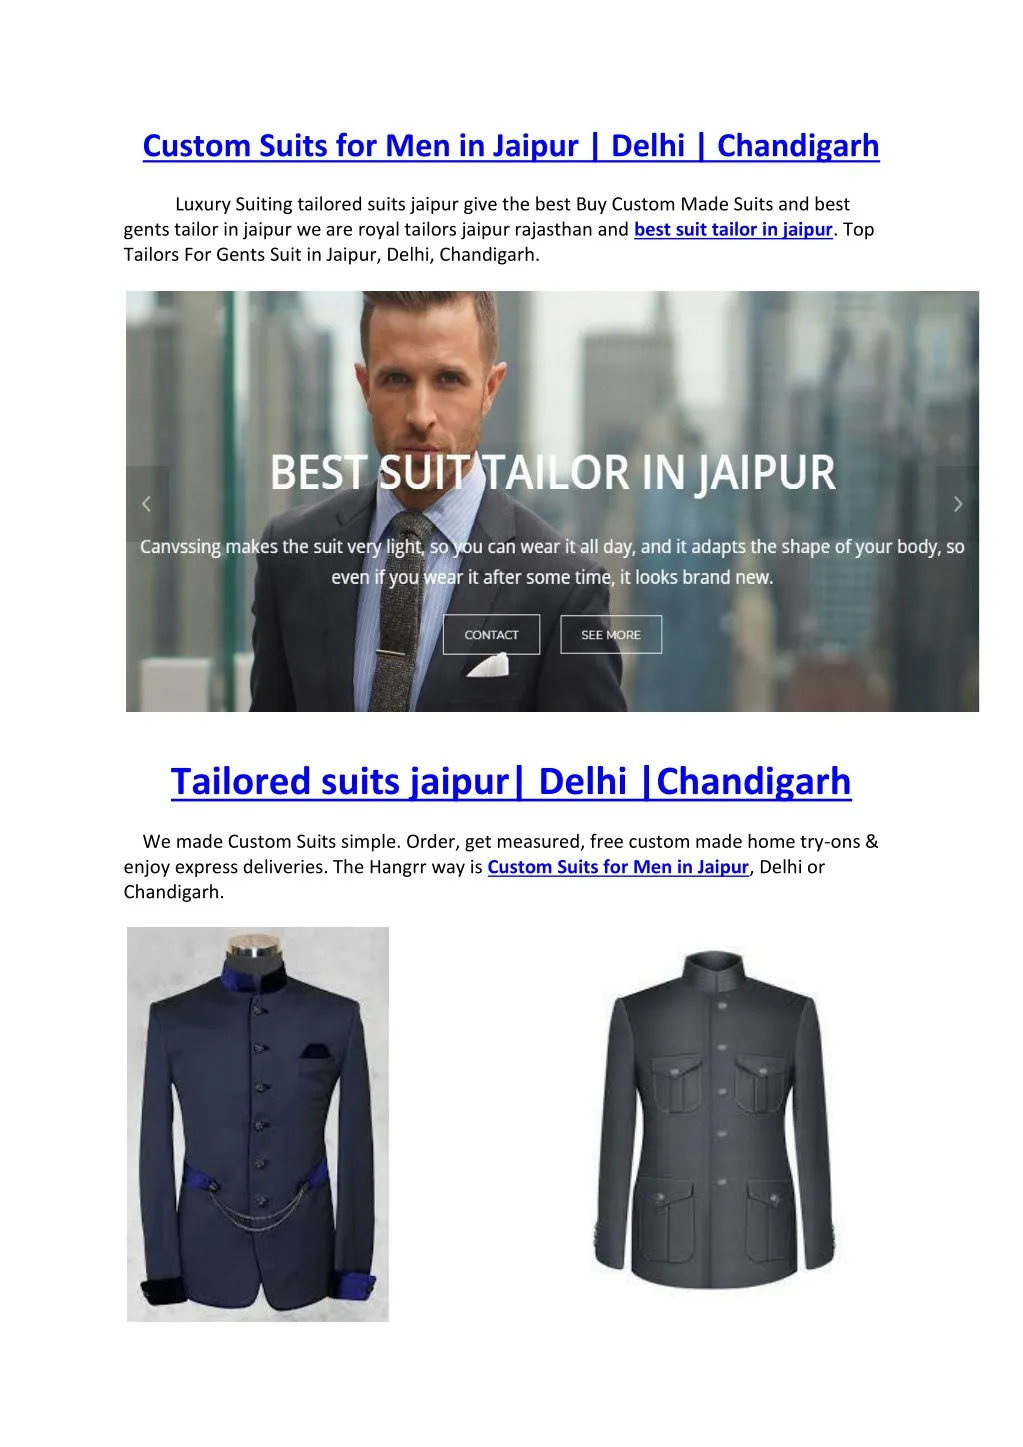 custom suits for men in jaipur delhi chandigarh